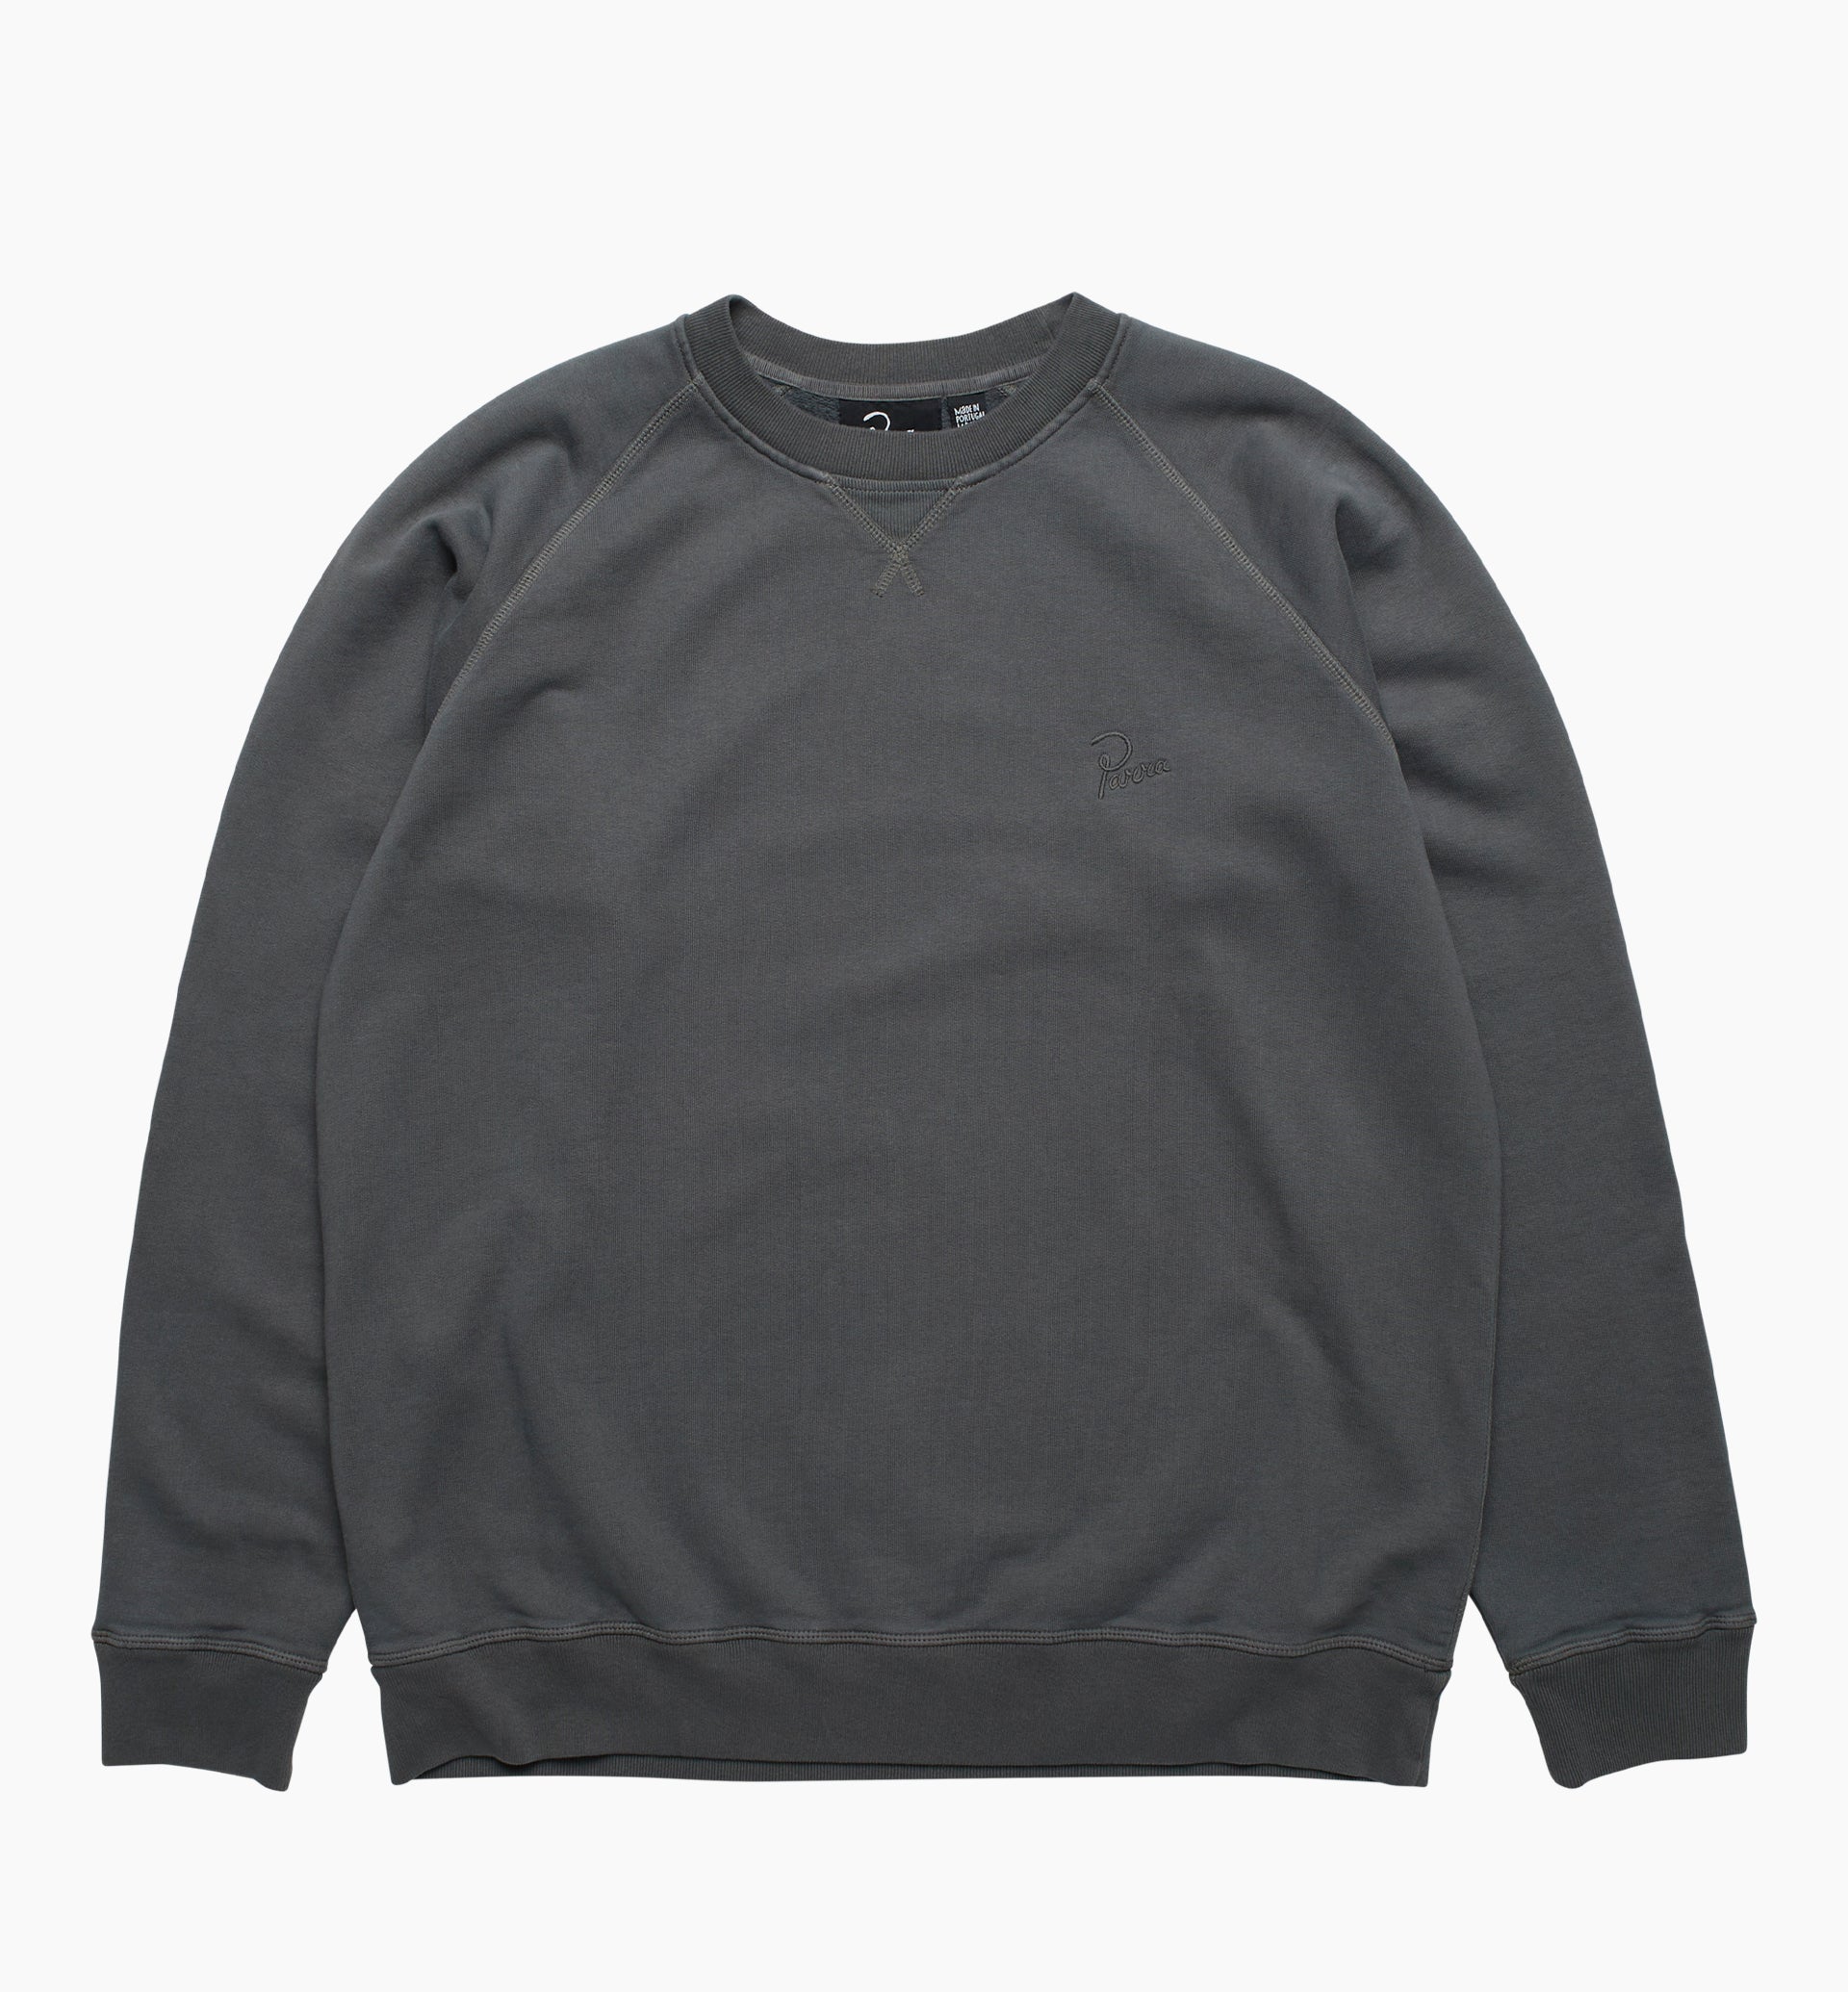 Parra - logo crew neck sweatshirt